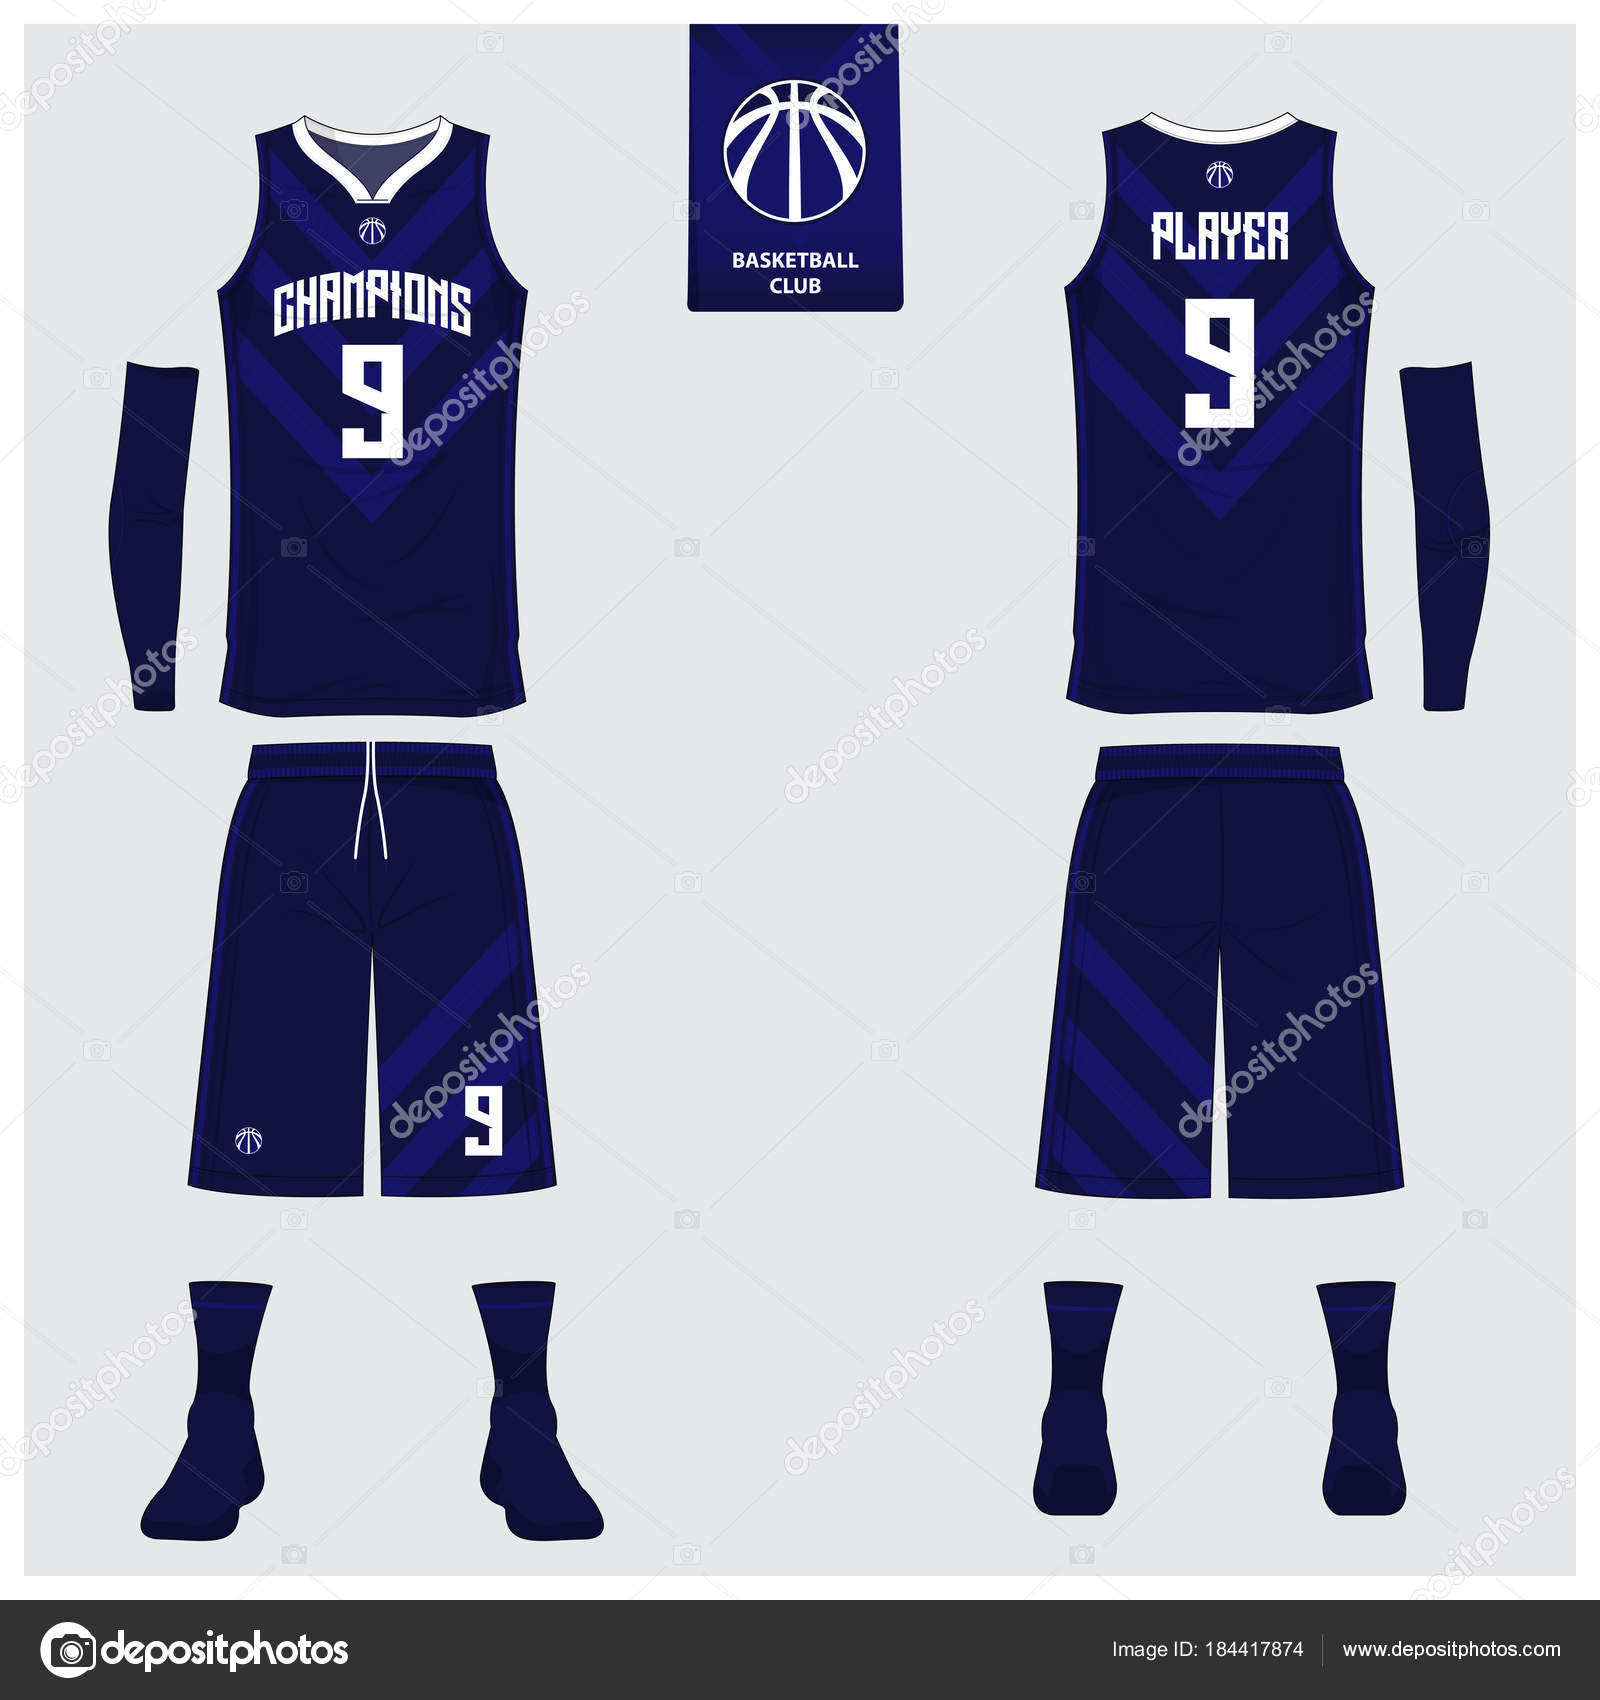 basketball jersey 2018 design